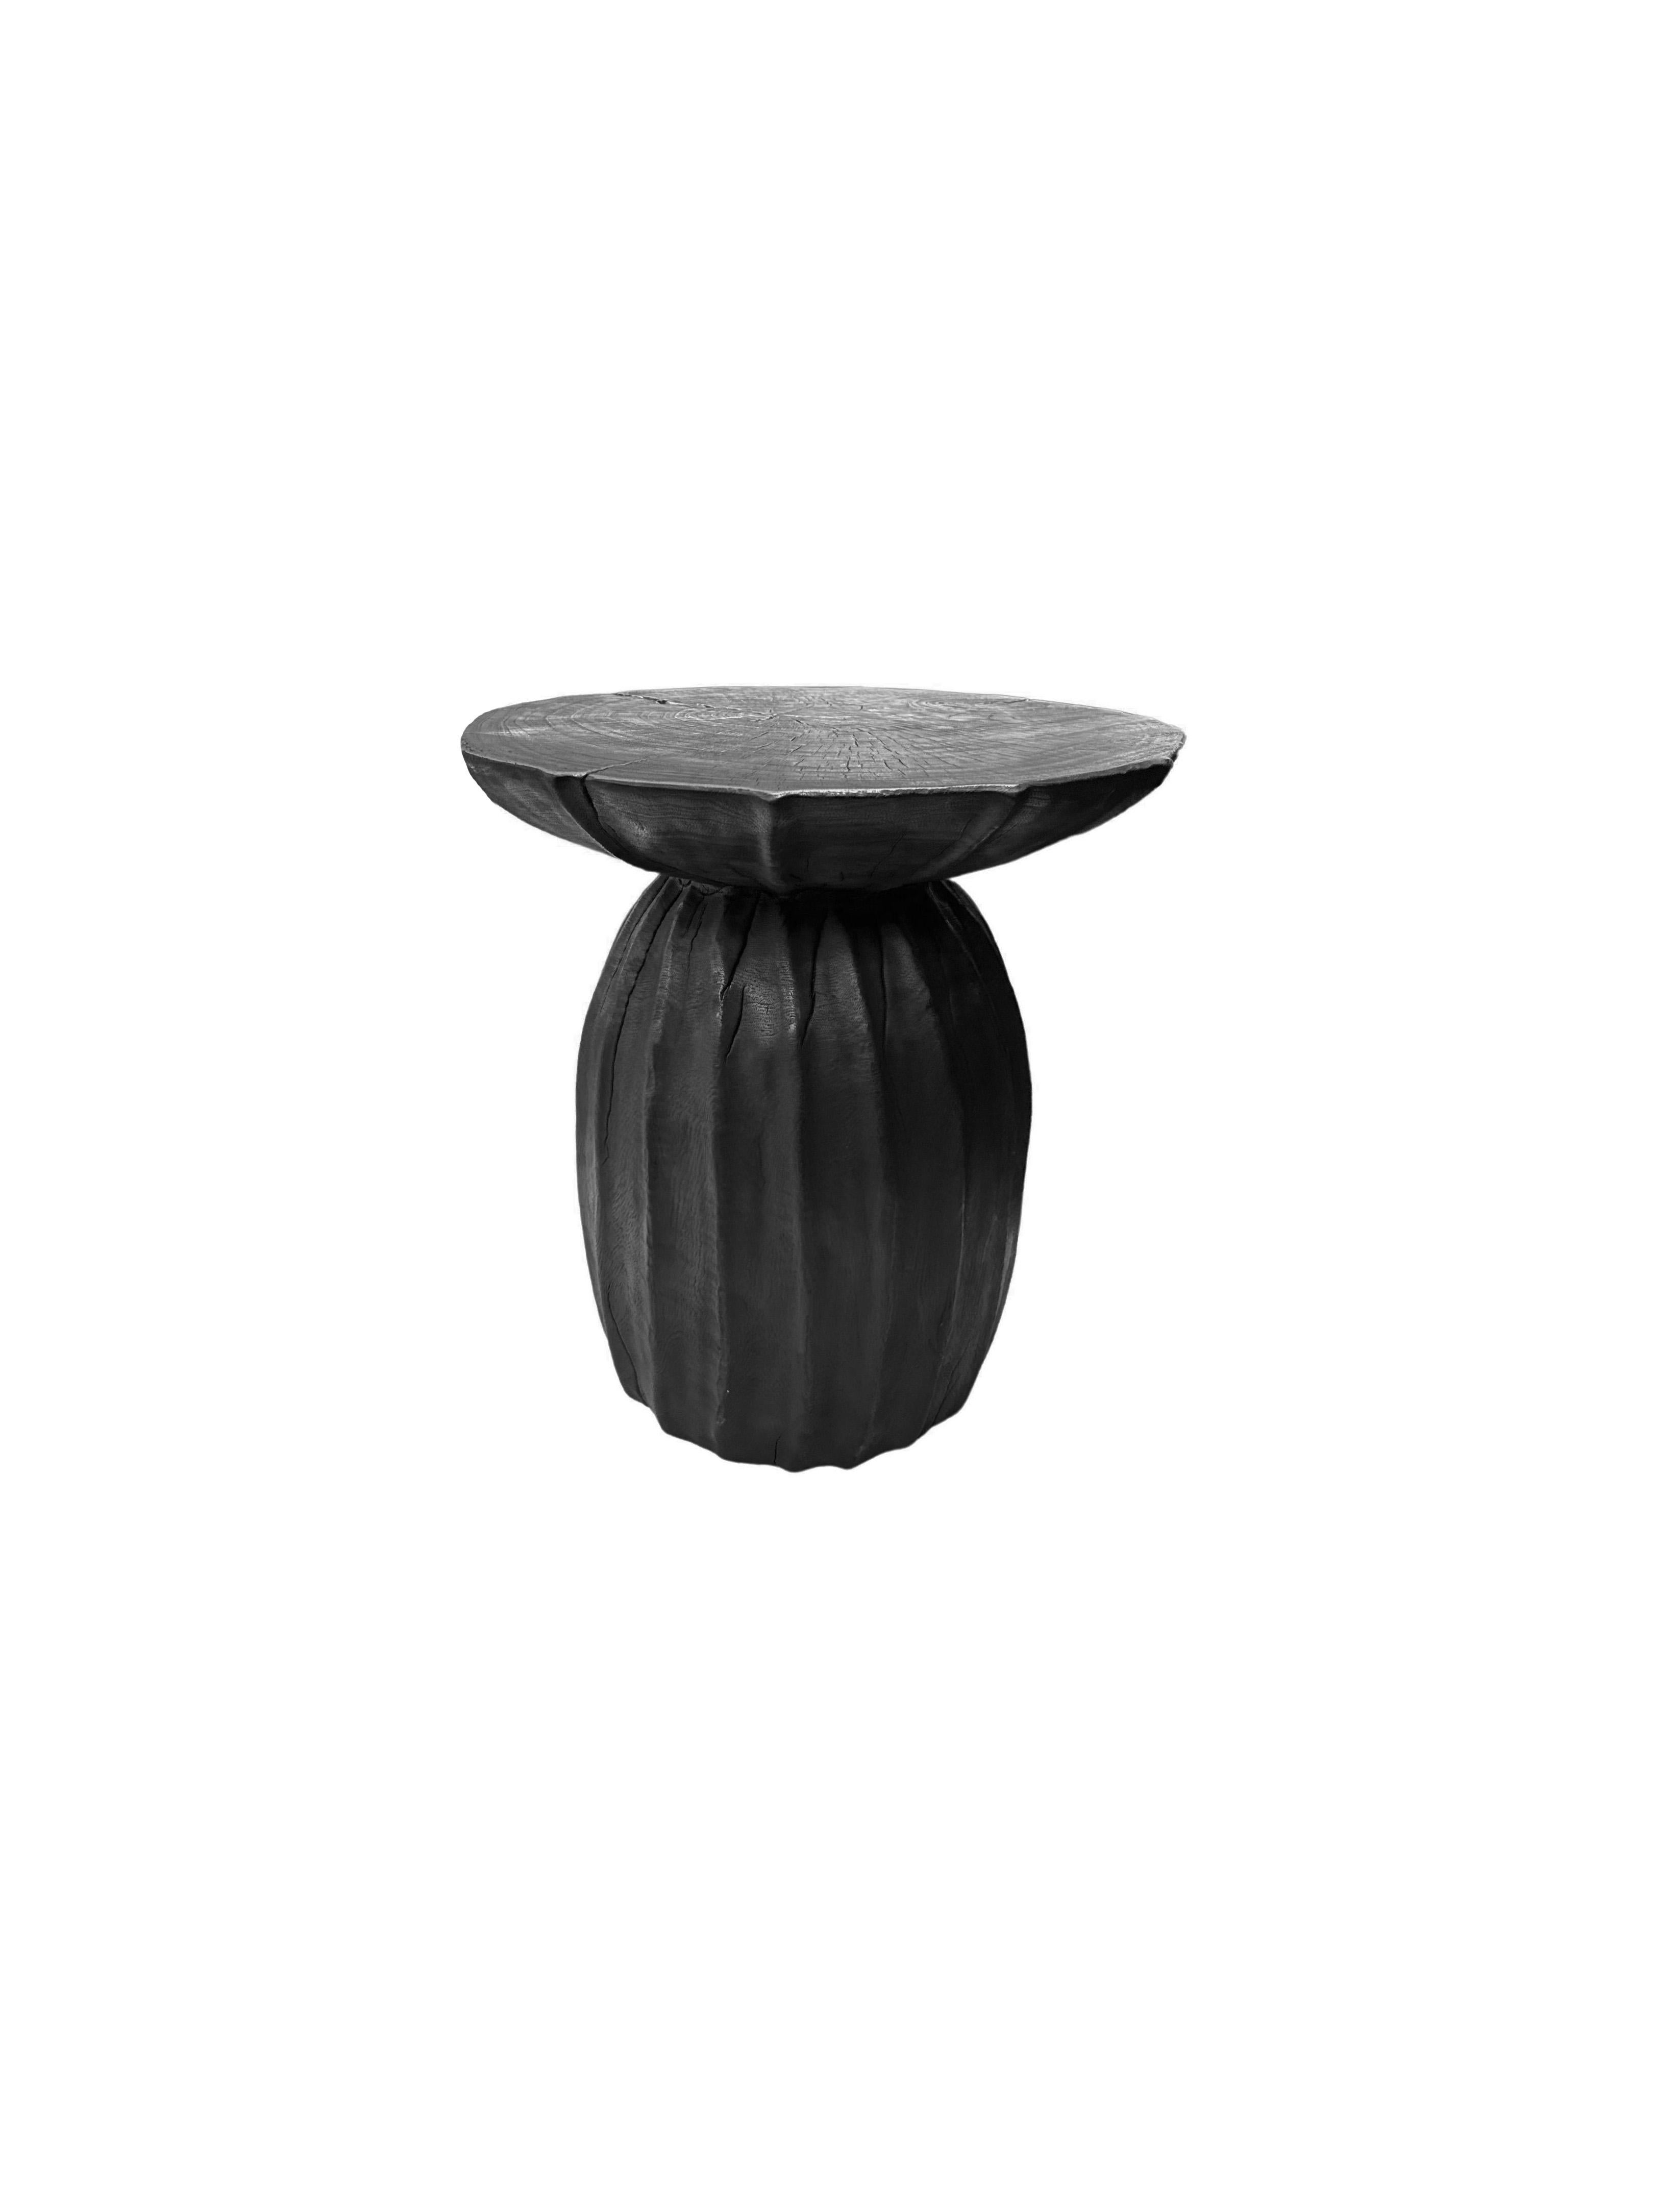 Cette table d'appoint ronde merveilleusement sculpturale présente un motif nervuré sur ses côtés. Le pigment neutre de la table lui permet de s'intégrer parfaitement dans n'importe quel espace. Il a été fabriqué à partir d'un bloc massif de bois de